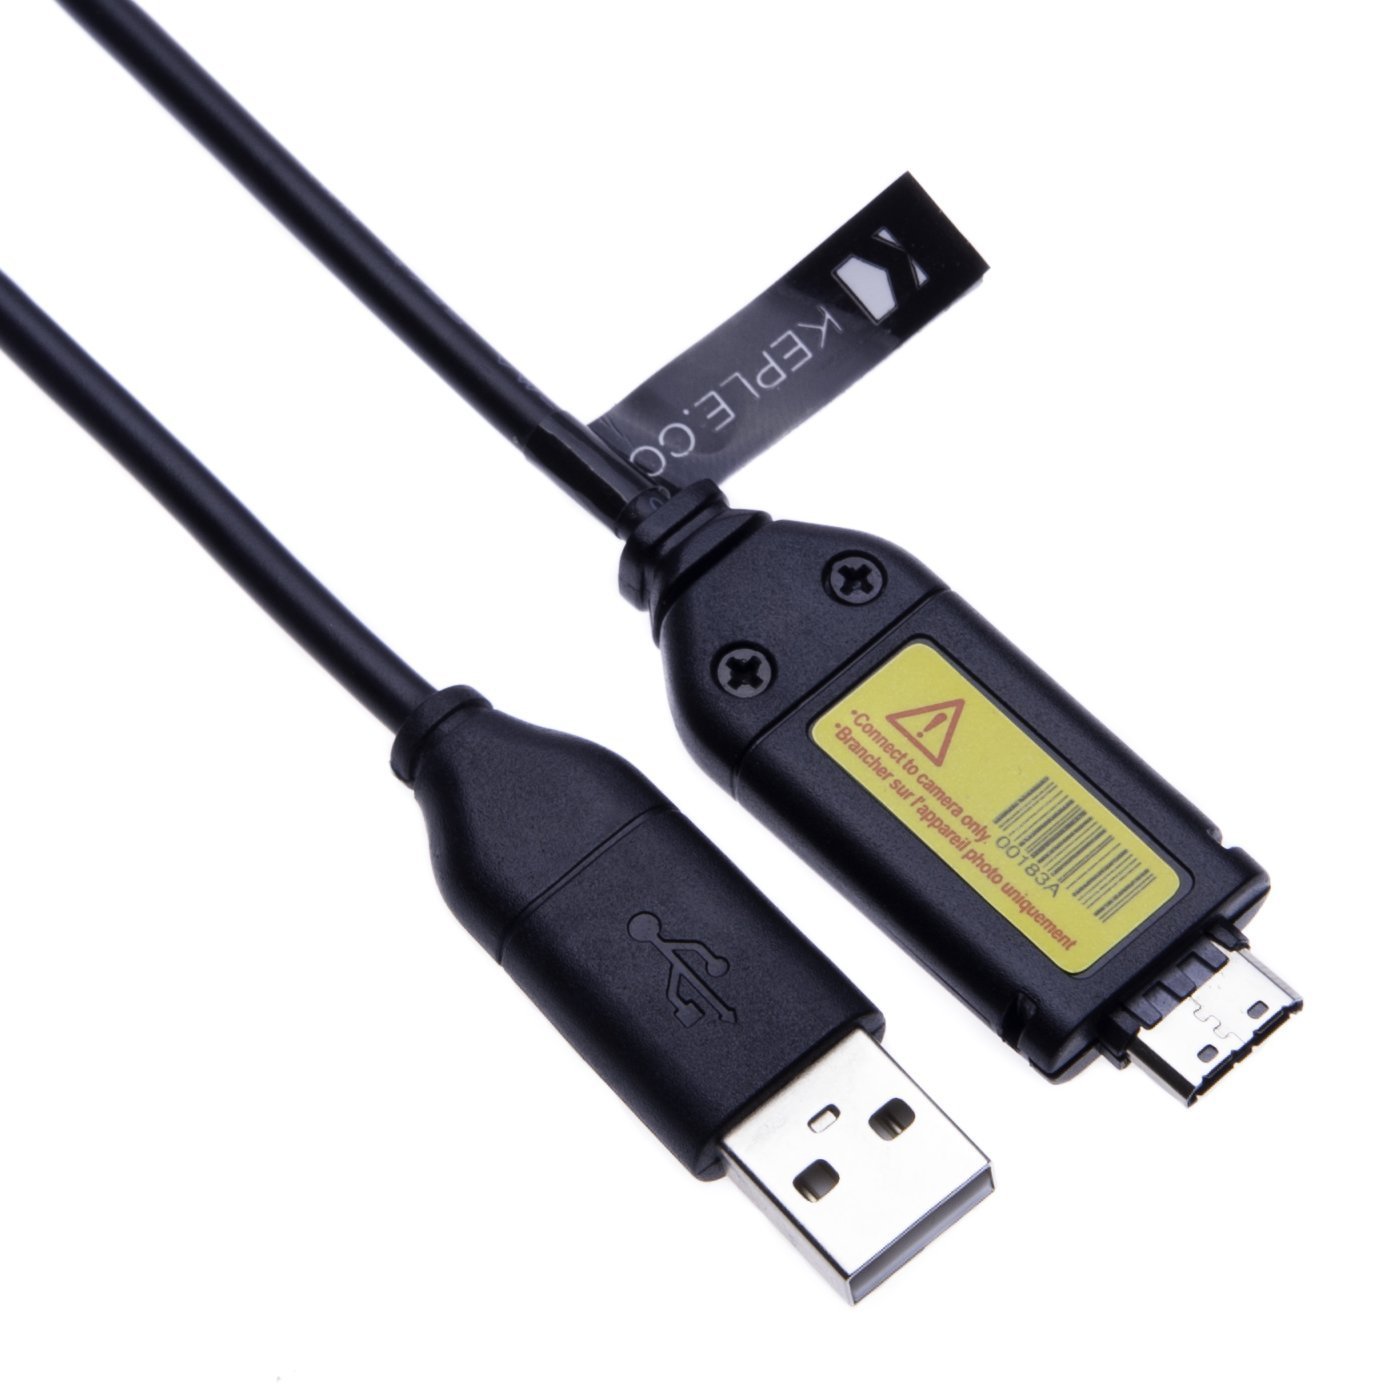 USB-Kabel für Samsung Digitalkamera P1000, P800, PL10, PL100, PL101, PL120, PL121, PL150, PL151, PL170, PL171, PL20, PL200, PL201 Ersatz für SUC-3 SUC-5 SUC-7 Daten- und Ladekabel